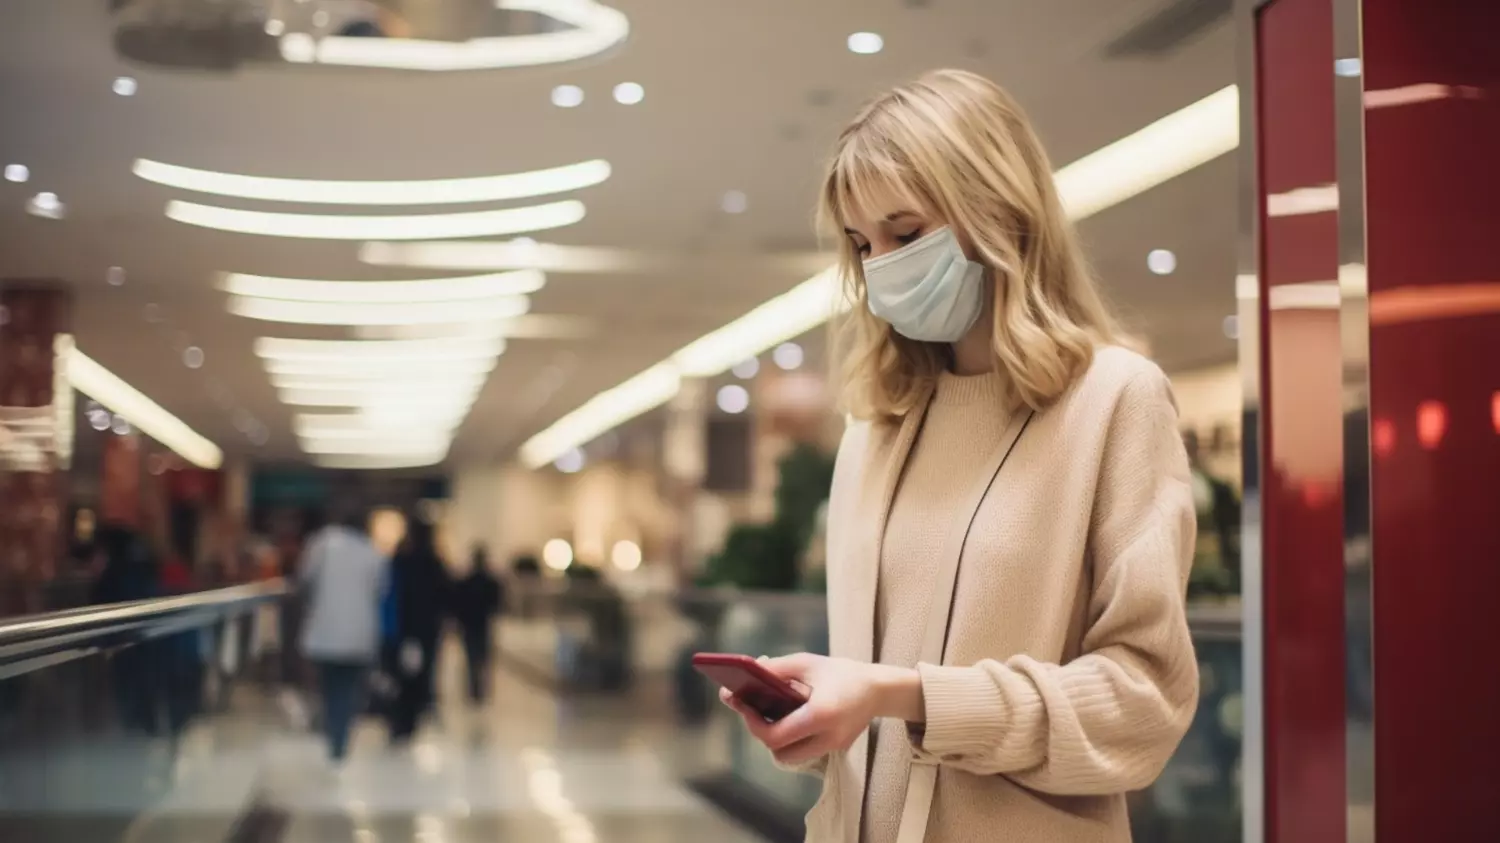 Один из способов уберечь себя от пневмонии - носить маску в общественных местах